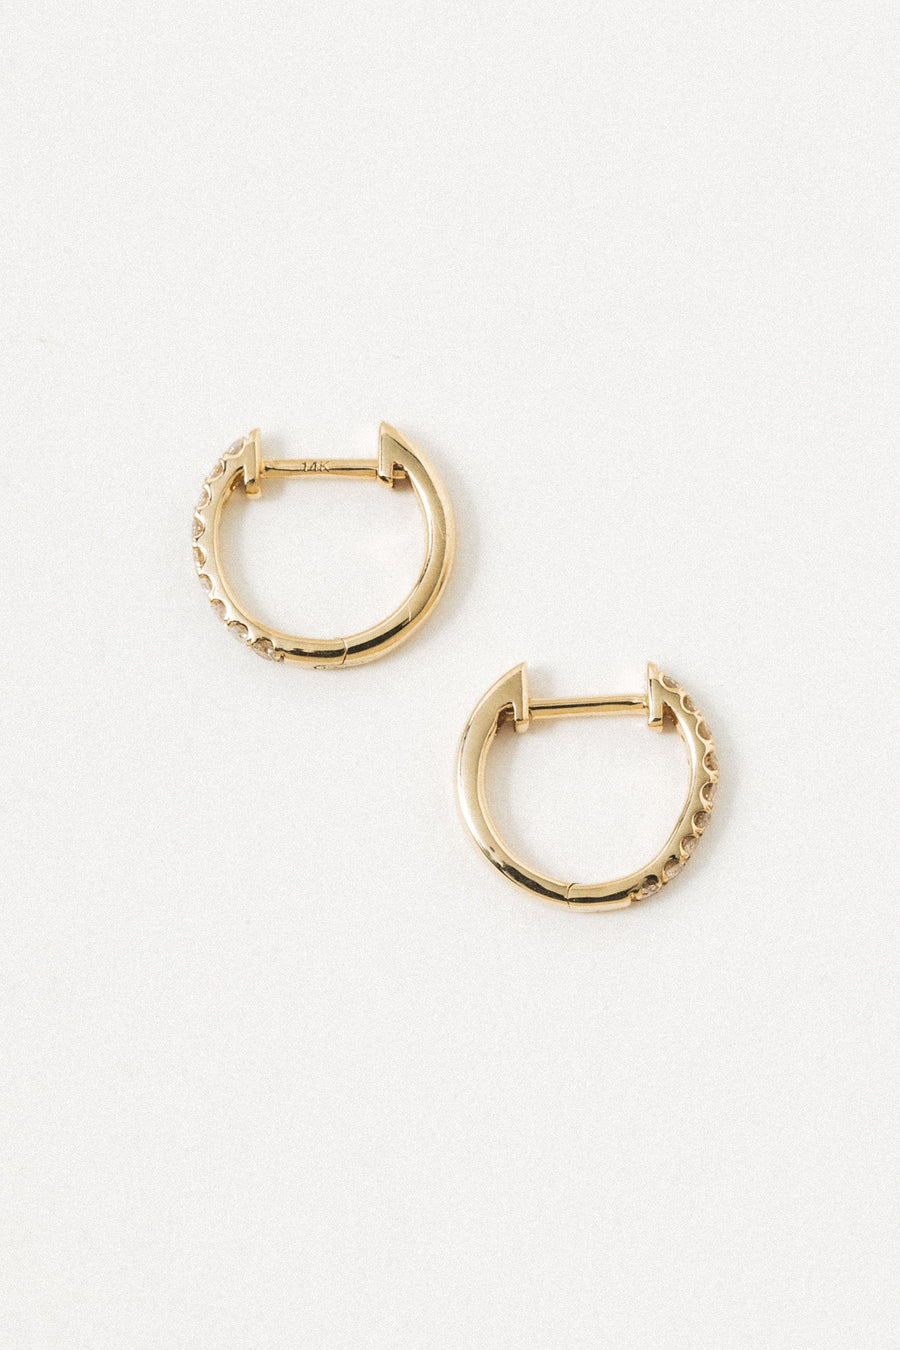 LA KAISER Jewelry Gold / Diamond 14kt Legacy Diamond Hoop Earrings